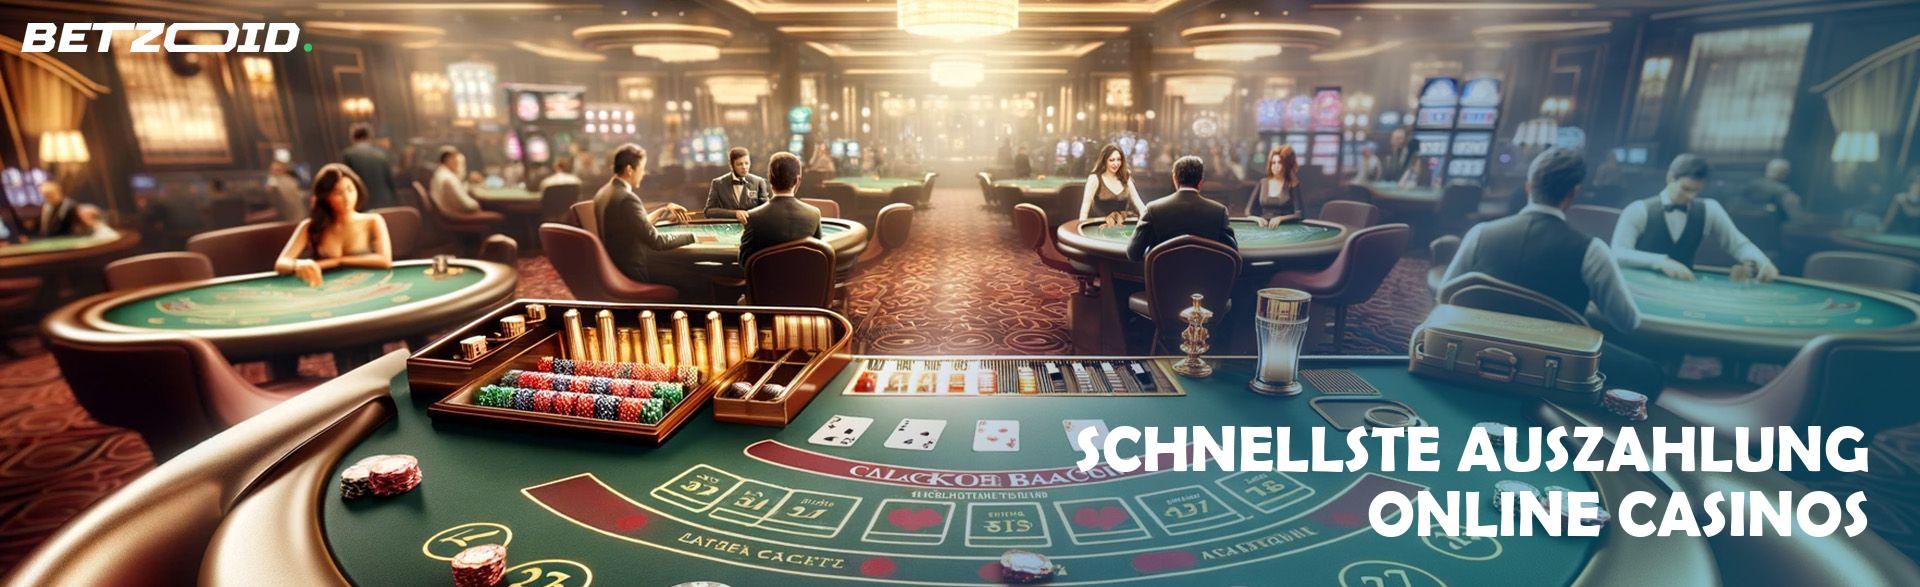 Schnellste Auszahlung Online Casinos.